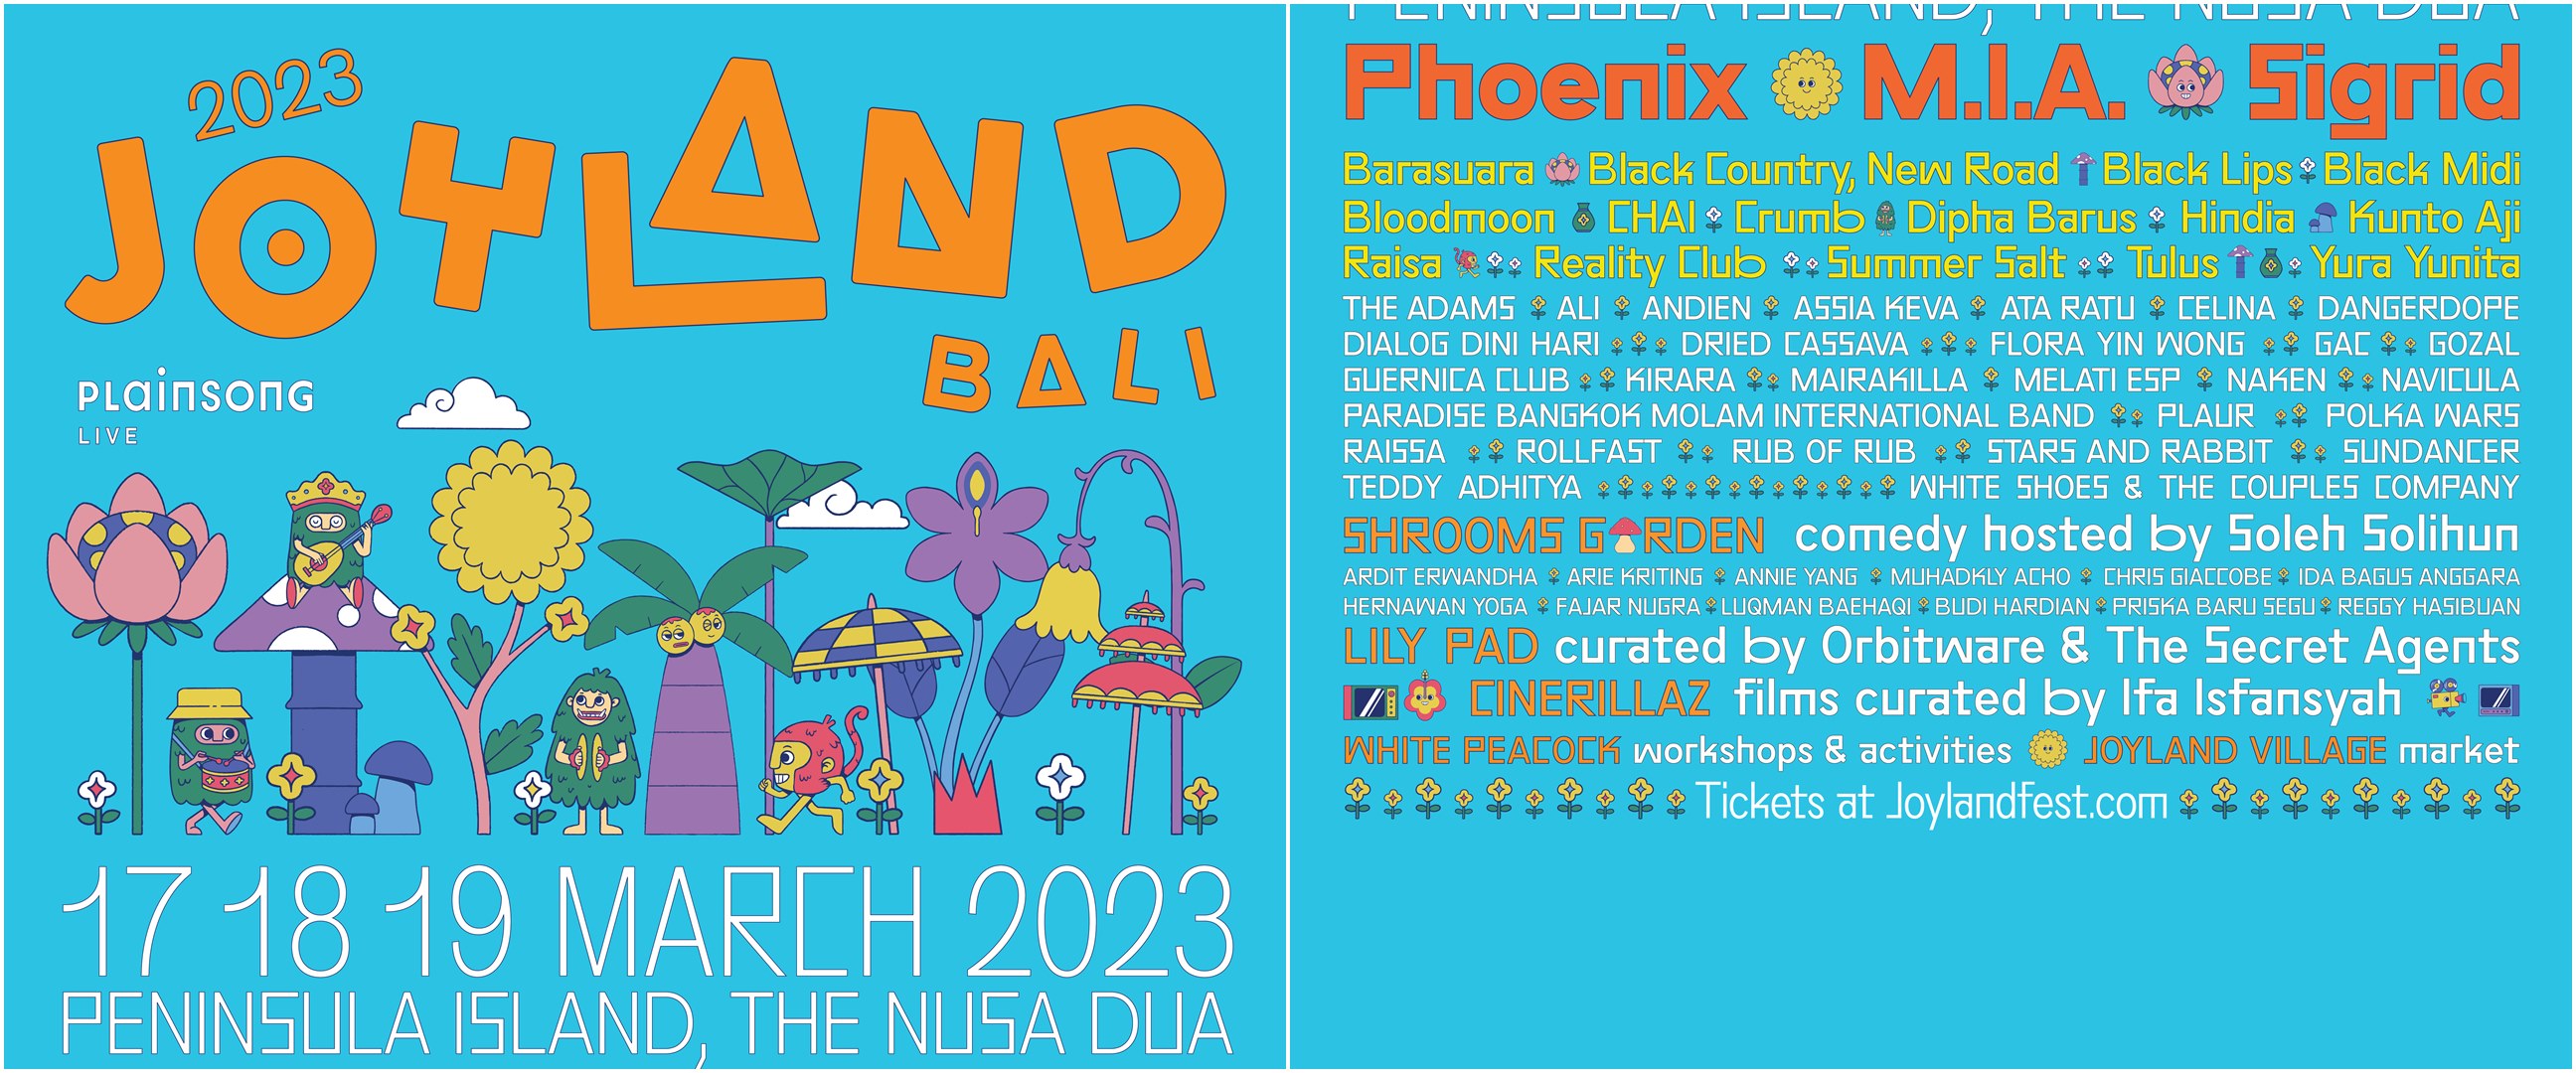 Joyland Festival 2023 kembali digelar di Bali, hadirkan penampilan spektakuler M.I.A